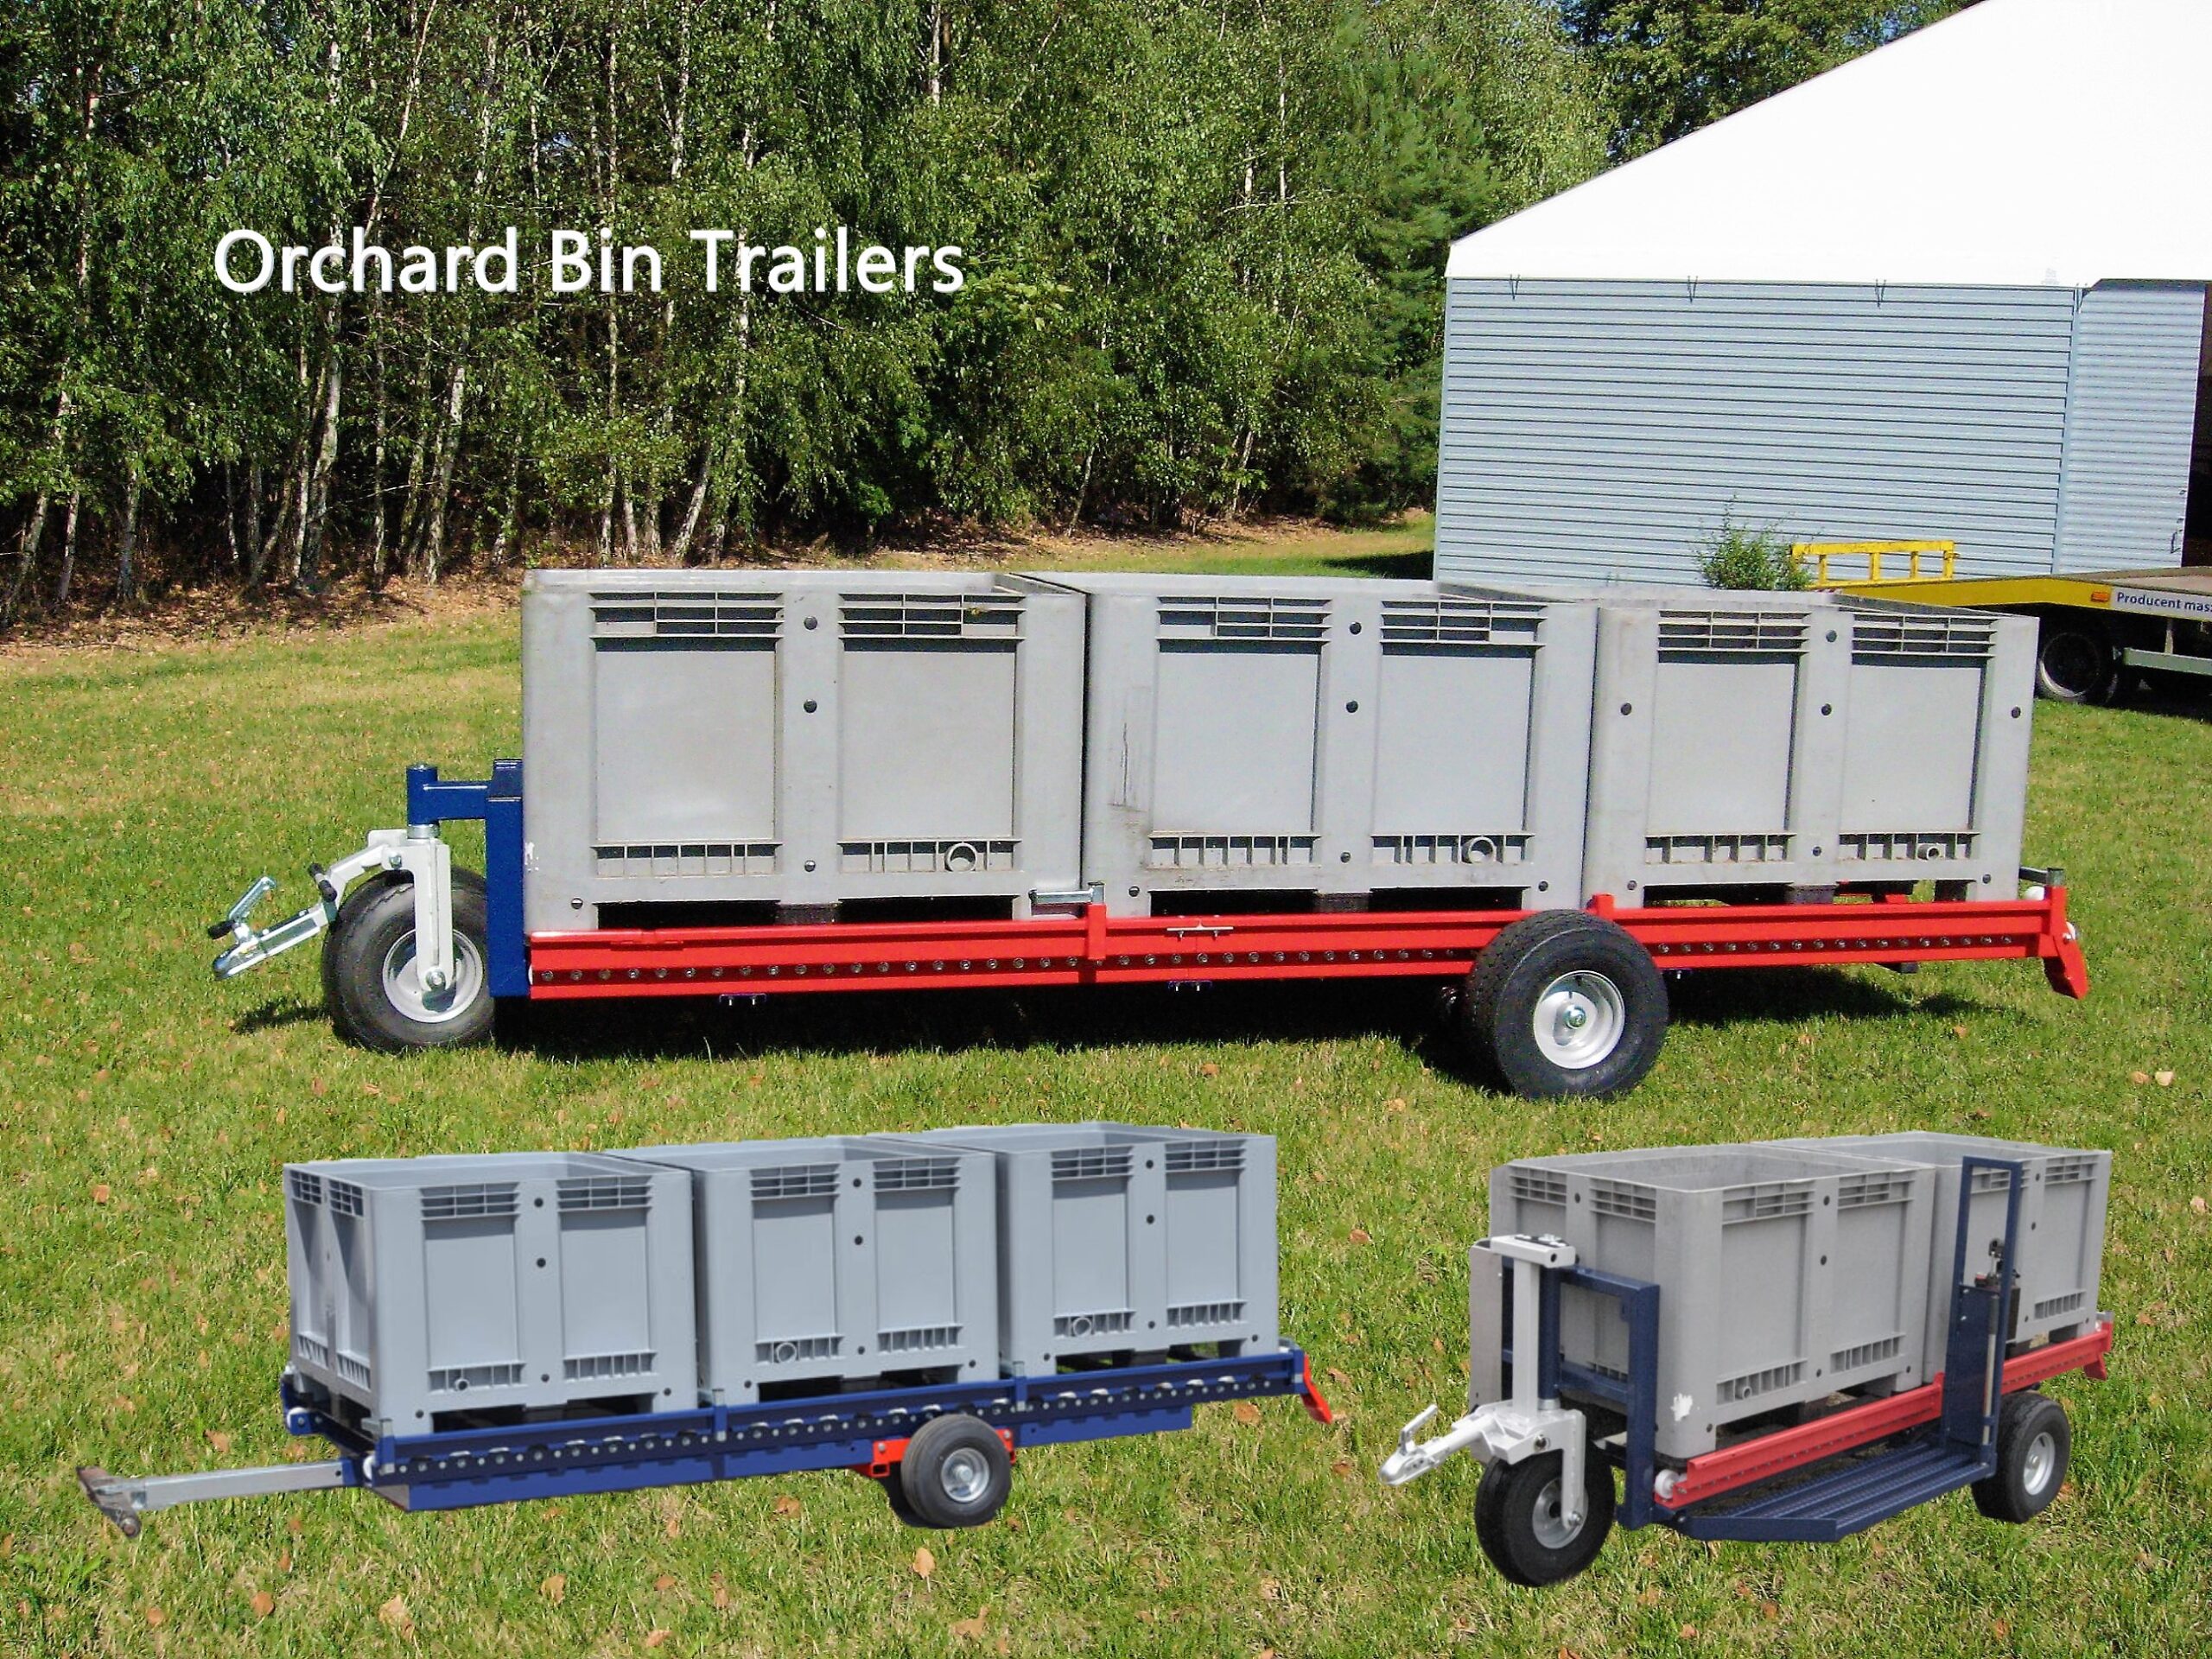 Obsterntewagen<br />
Sie sind für den Transport von Paletten Kisten und für die Arbeit mit unseren Beerenerntemaschinen geeignet.